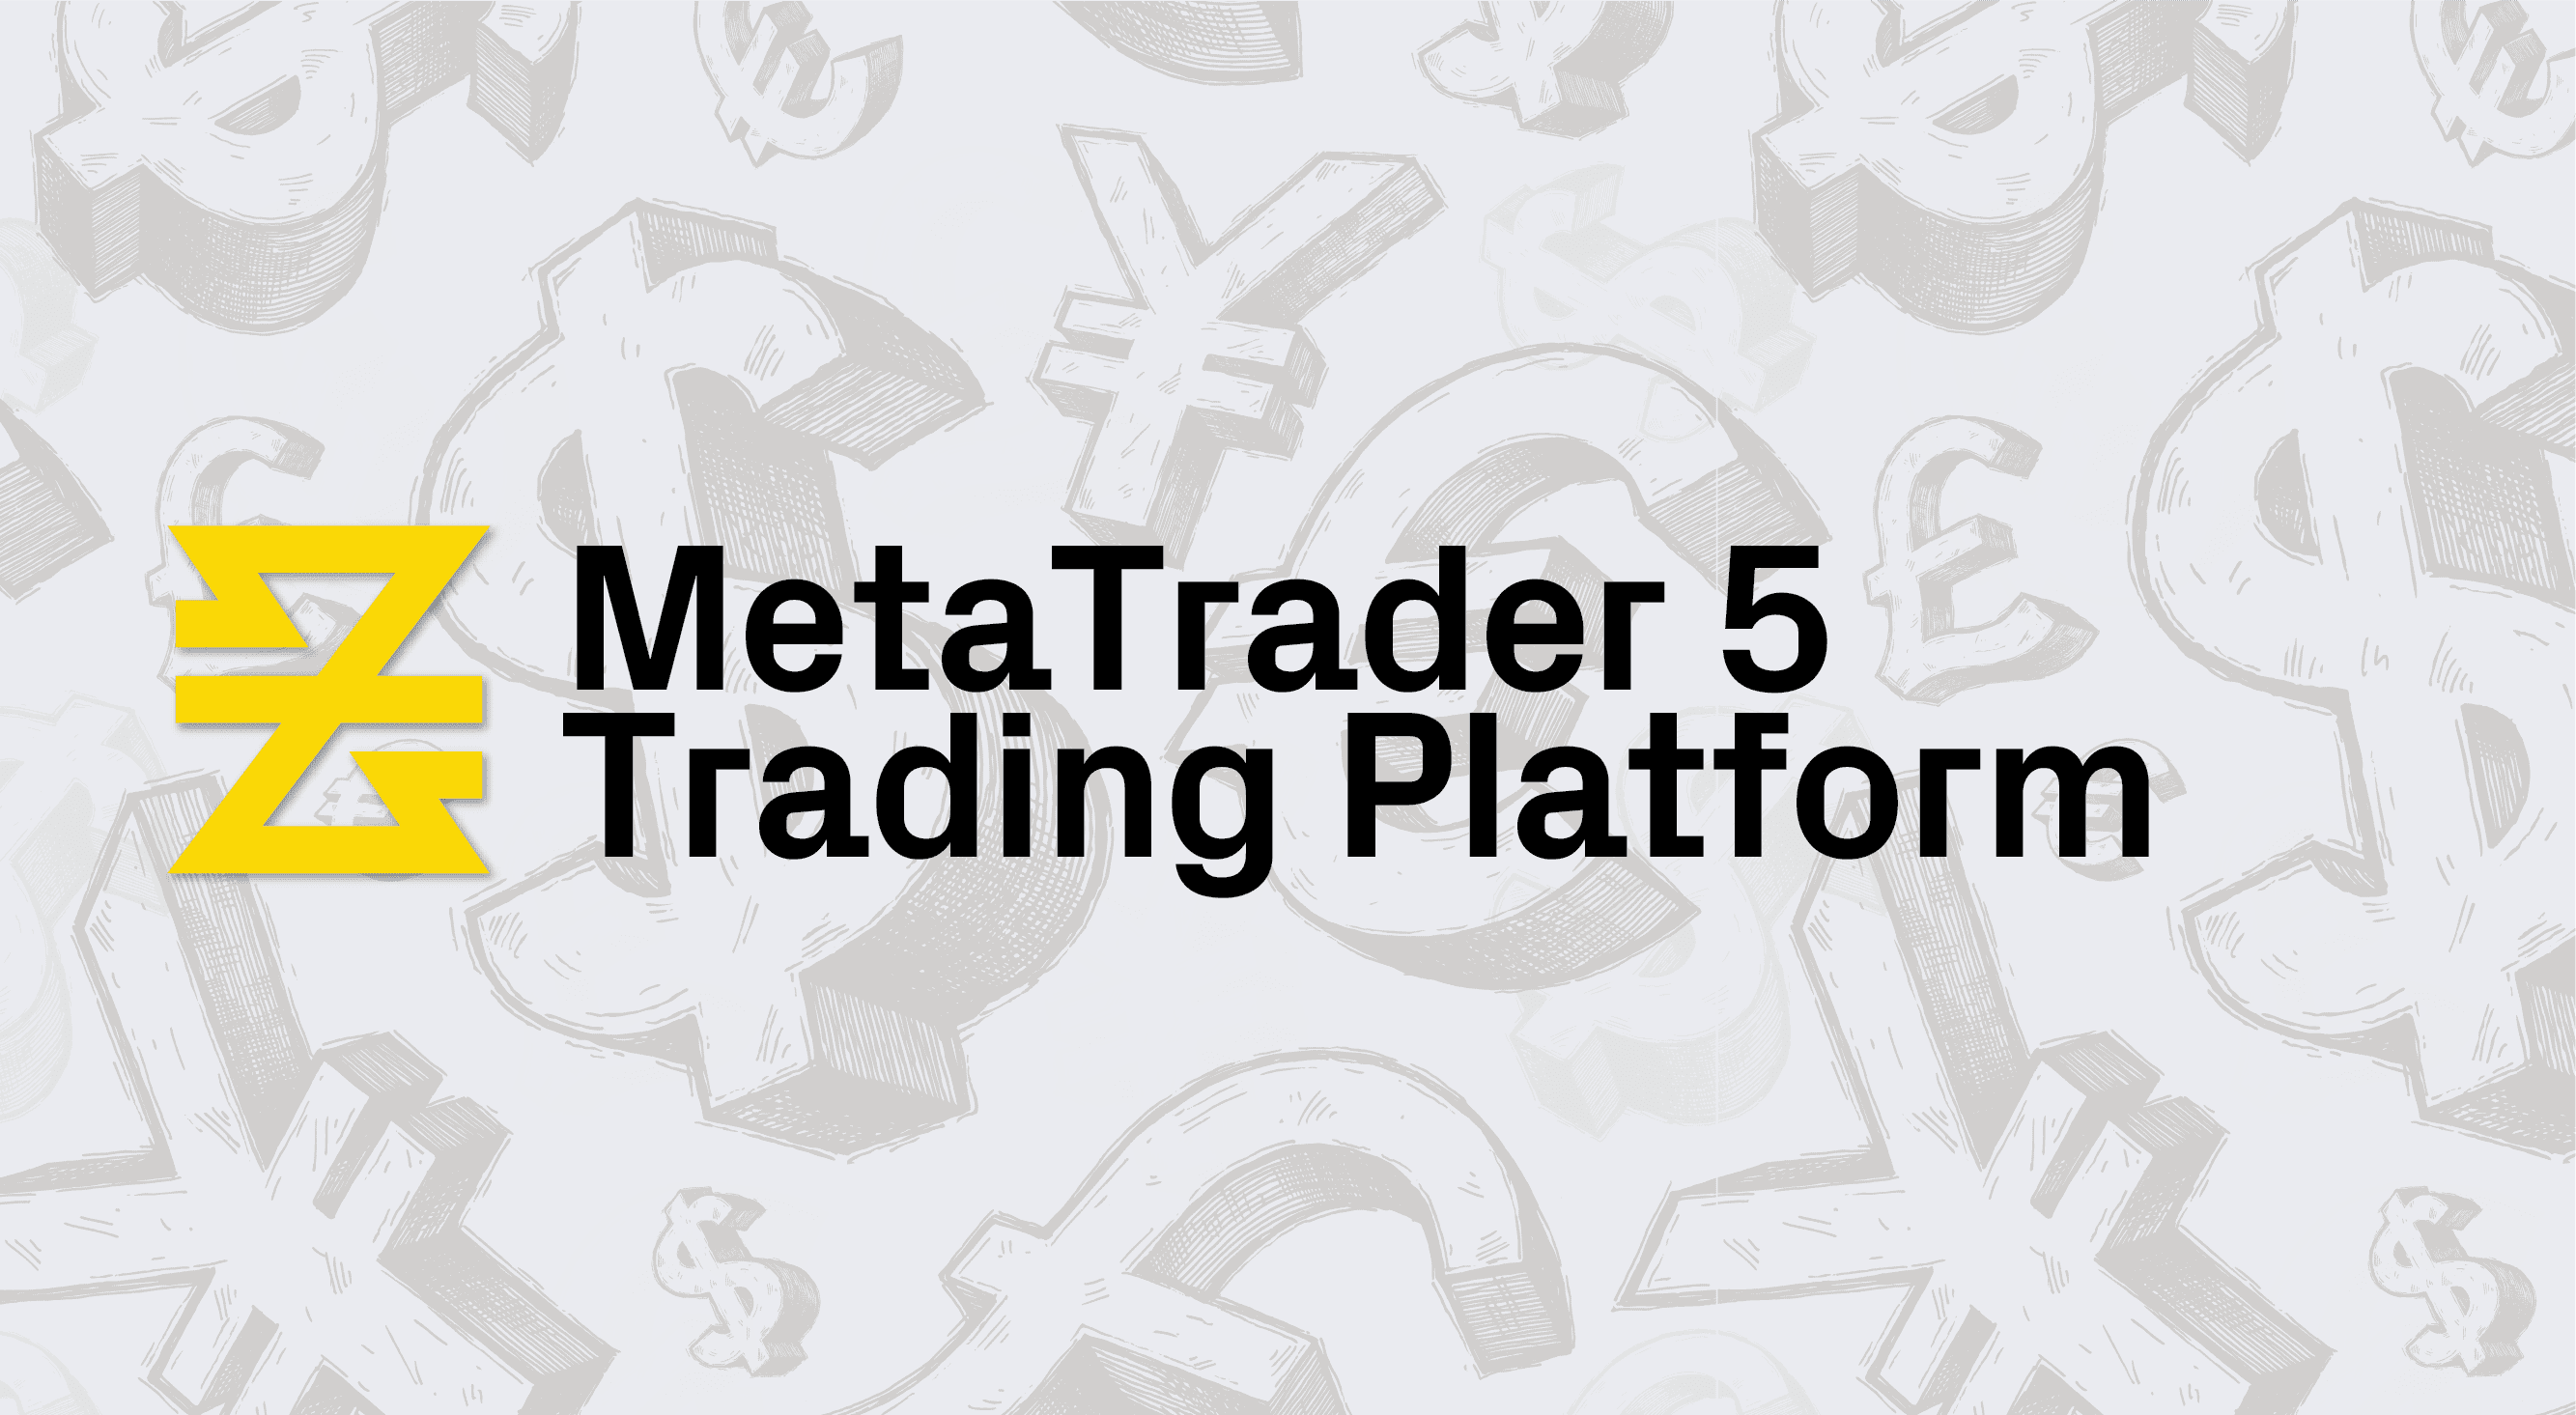 The MetaTrader 5 Trading Platform | Lesson 2